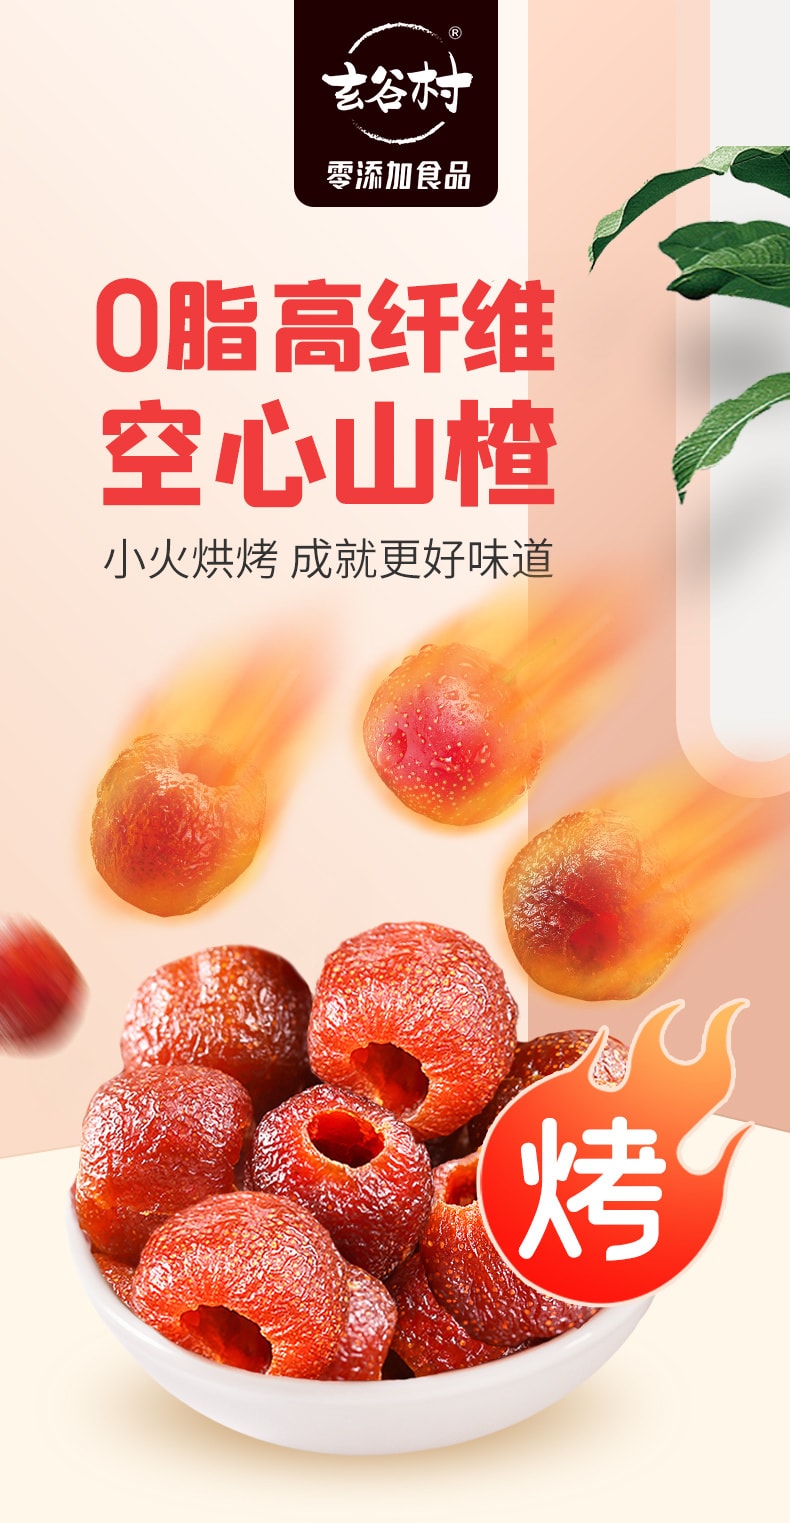 中国 玄谷村 高纤零脂 零添加 空心山楂 110克 助消化 酸甜适中 全家放心吃